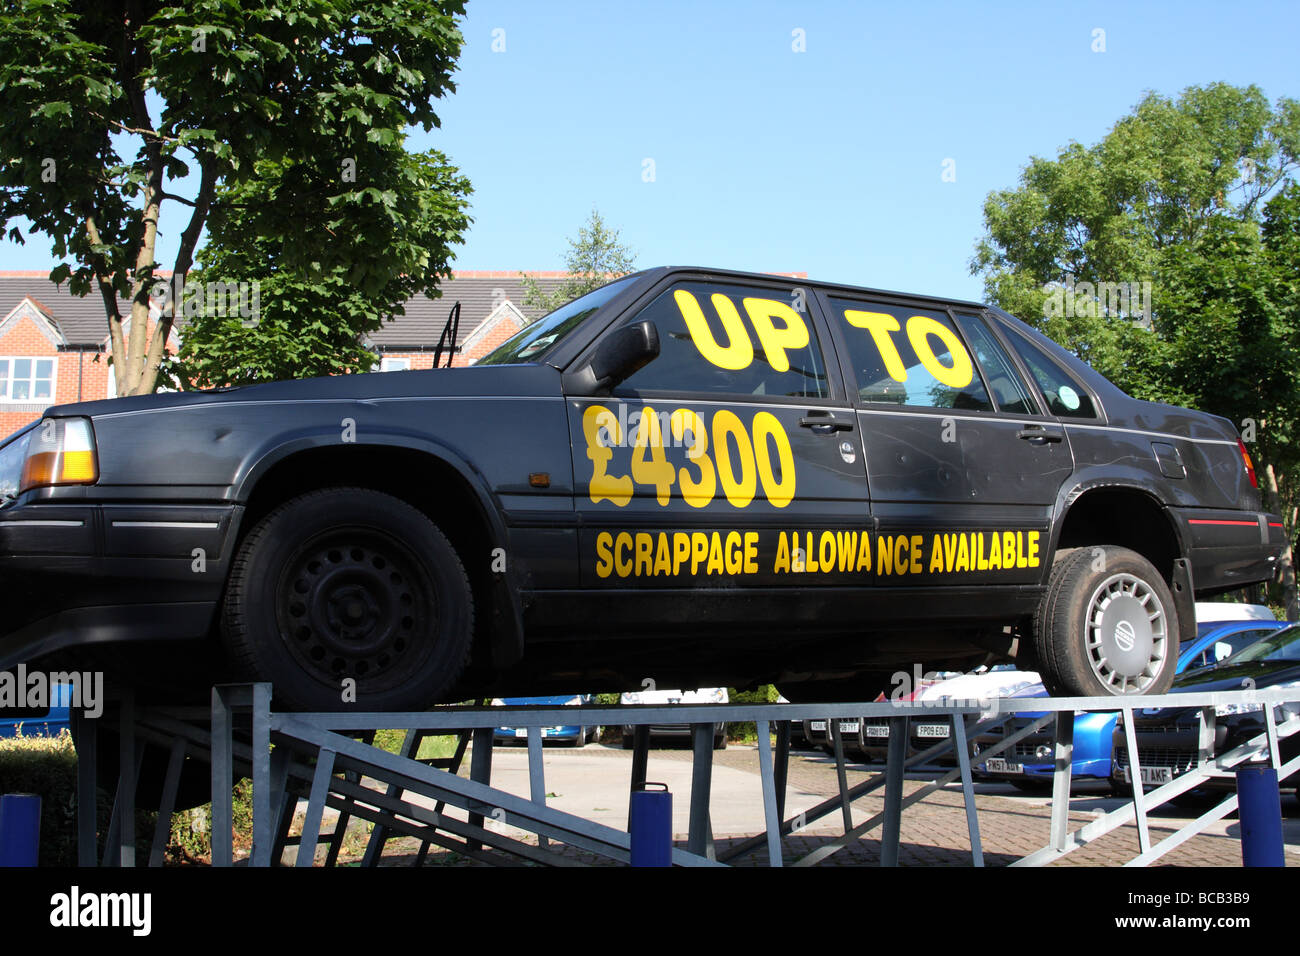 Una vecchia auto viene utilizzato per pubblicizzare la rottamazione compensativa presso un concessionario in una città del Regno Unito. Foto Stock